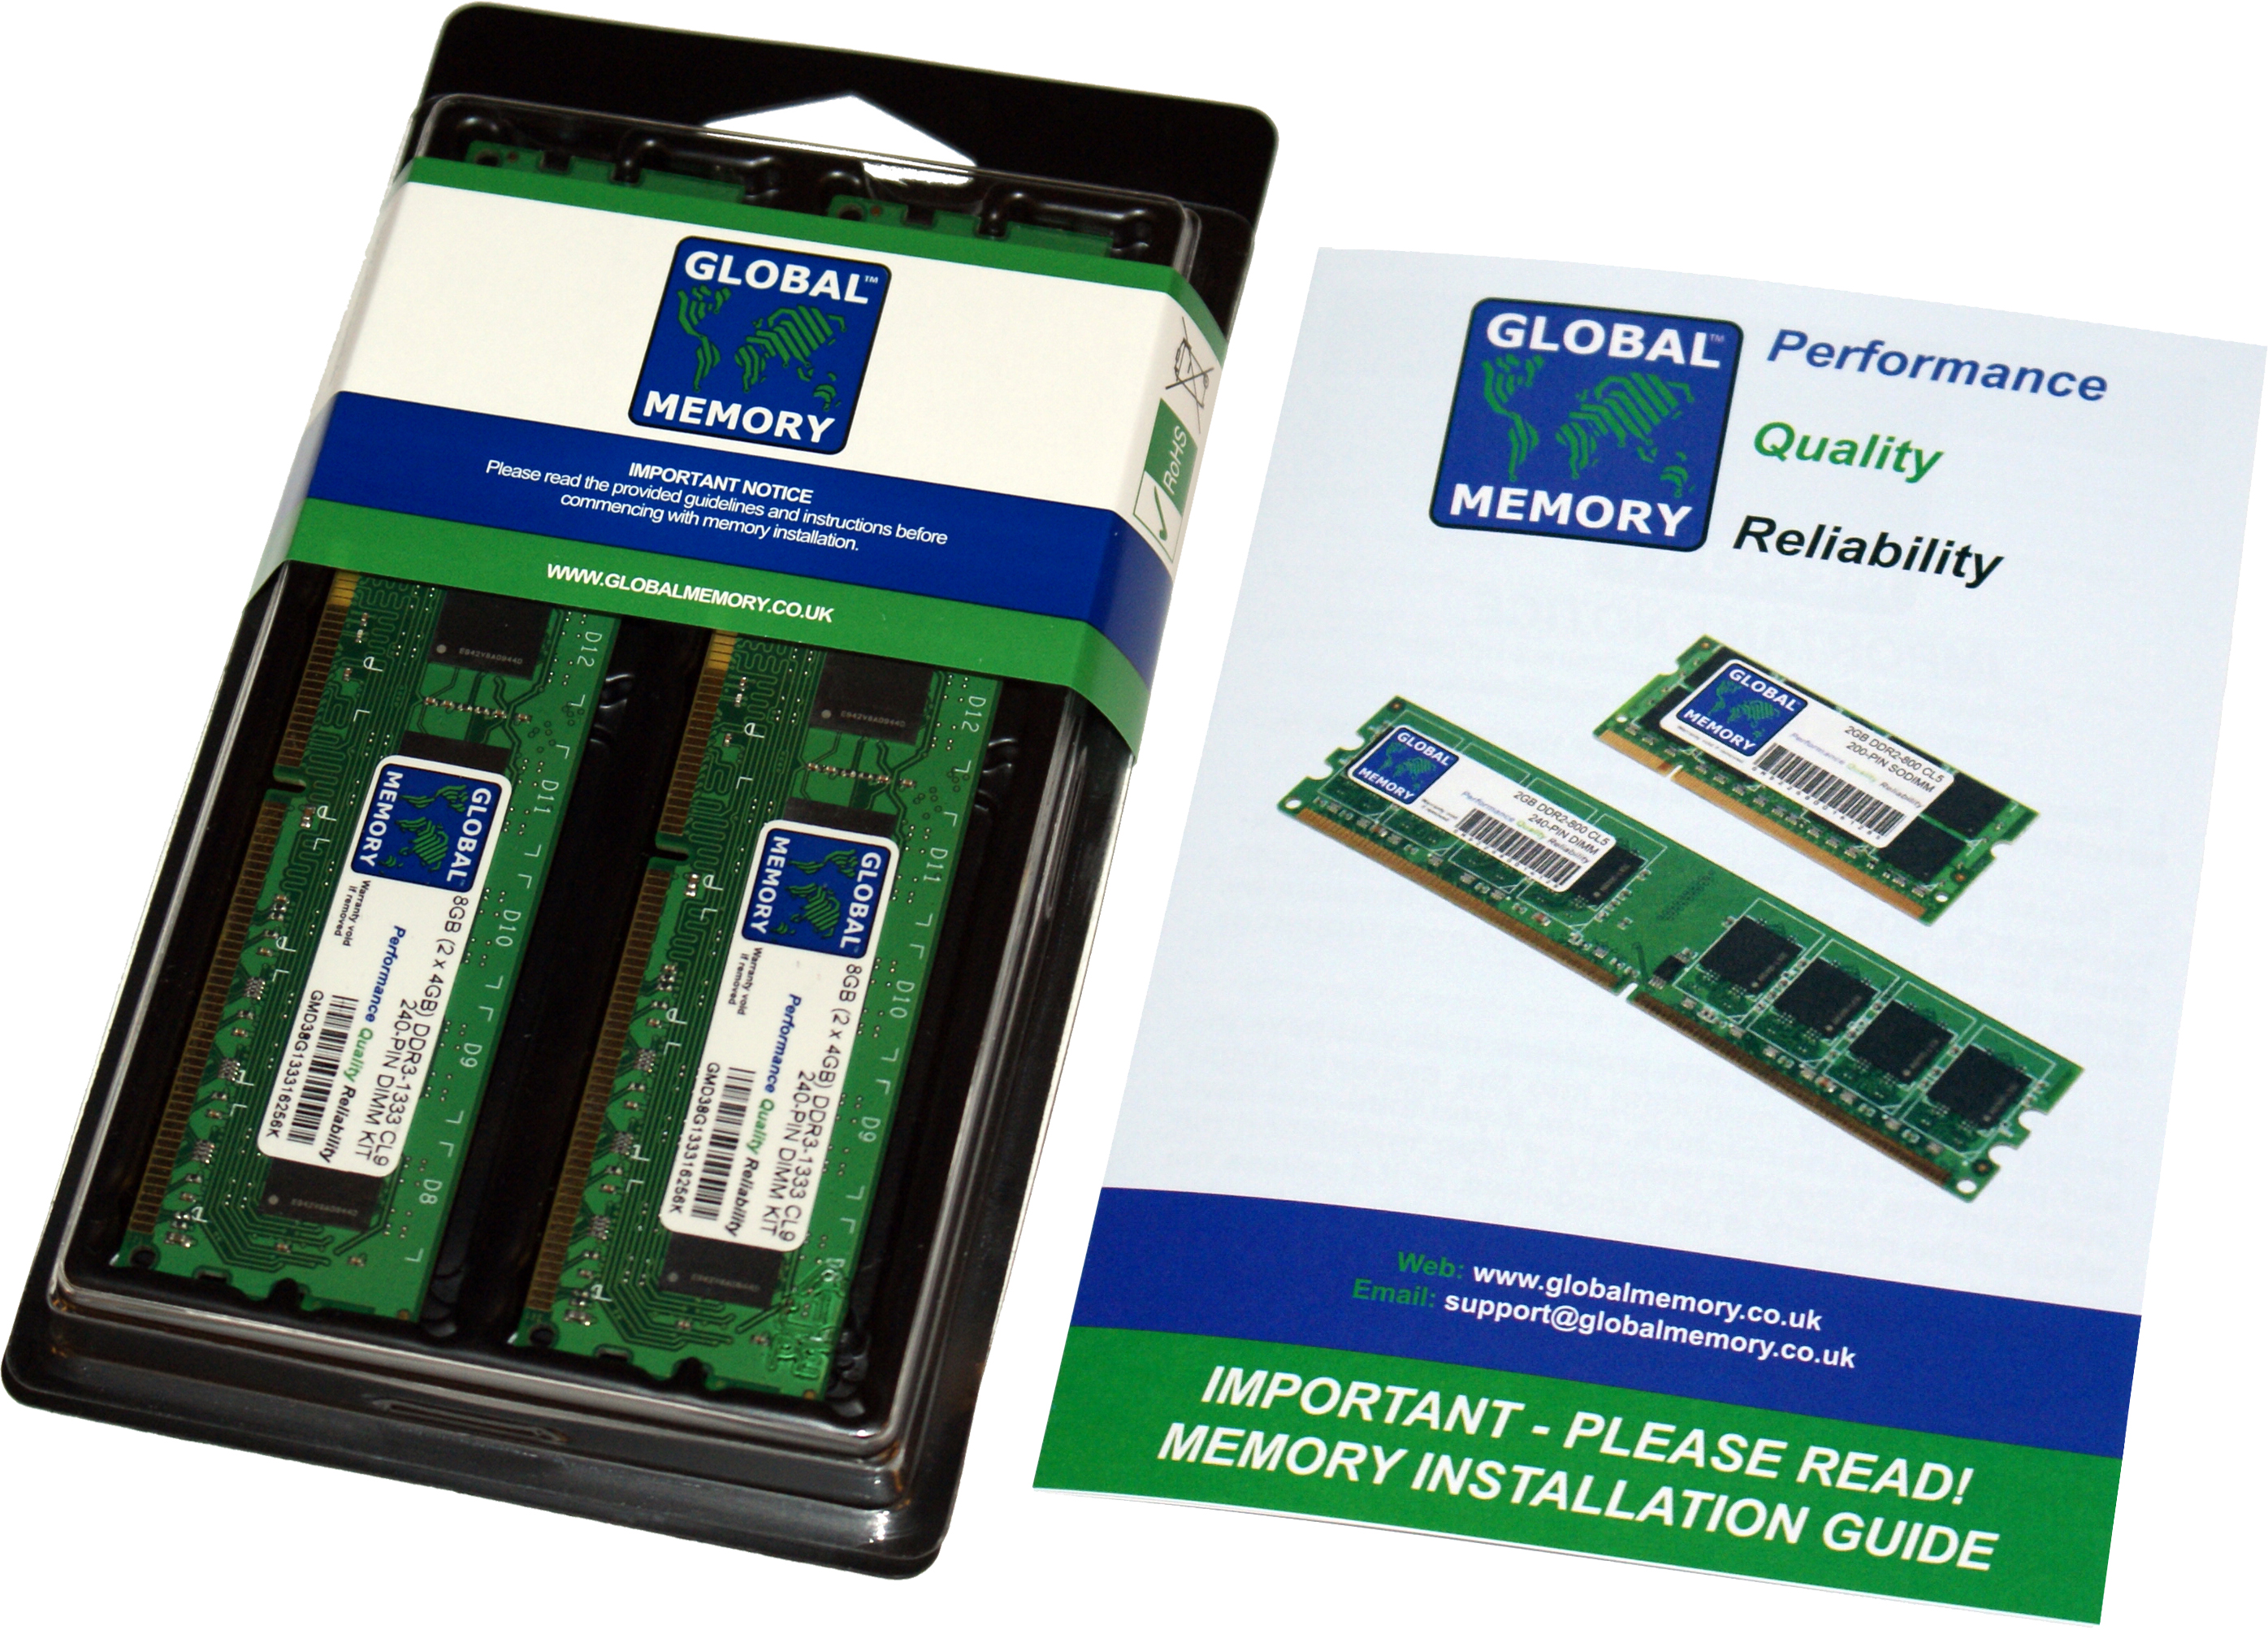 16GB (2 x 8GB) DDR3 1866MHz PC3-14900 240-PIN DIMM MEMORY RAM KIT FOR HEWLETT-PACKARD DESKTOPS